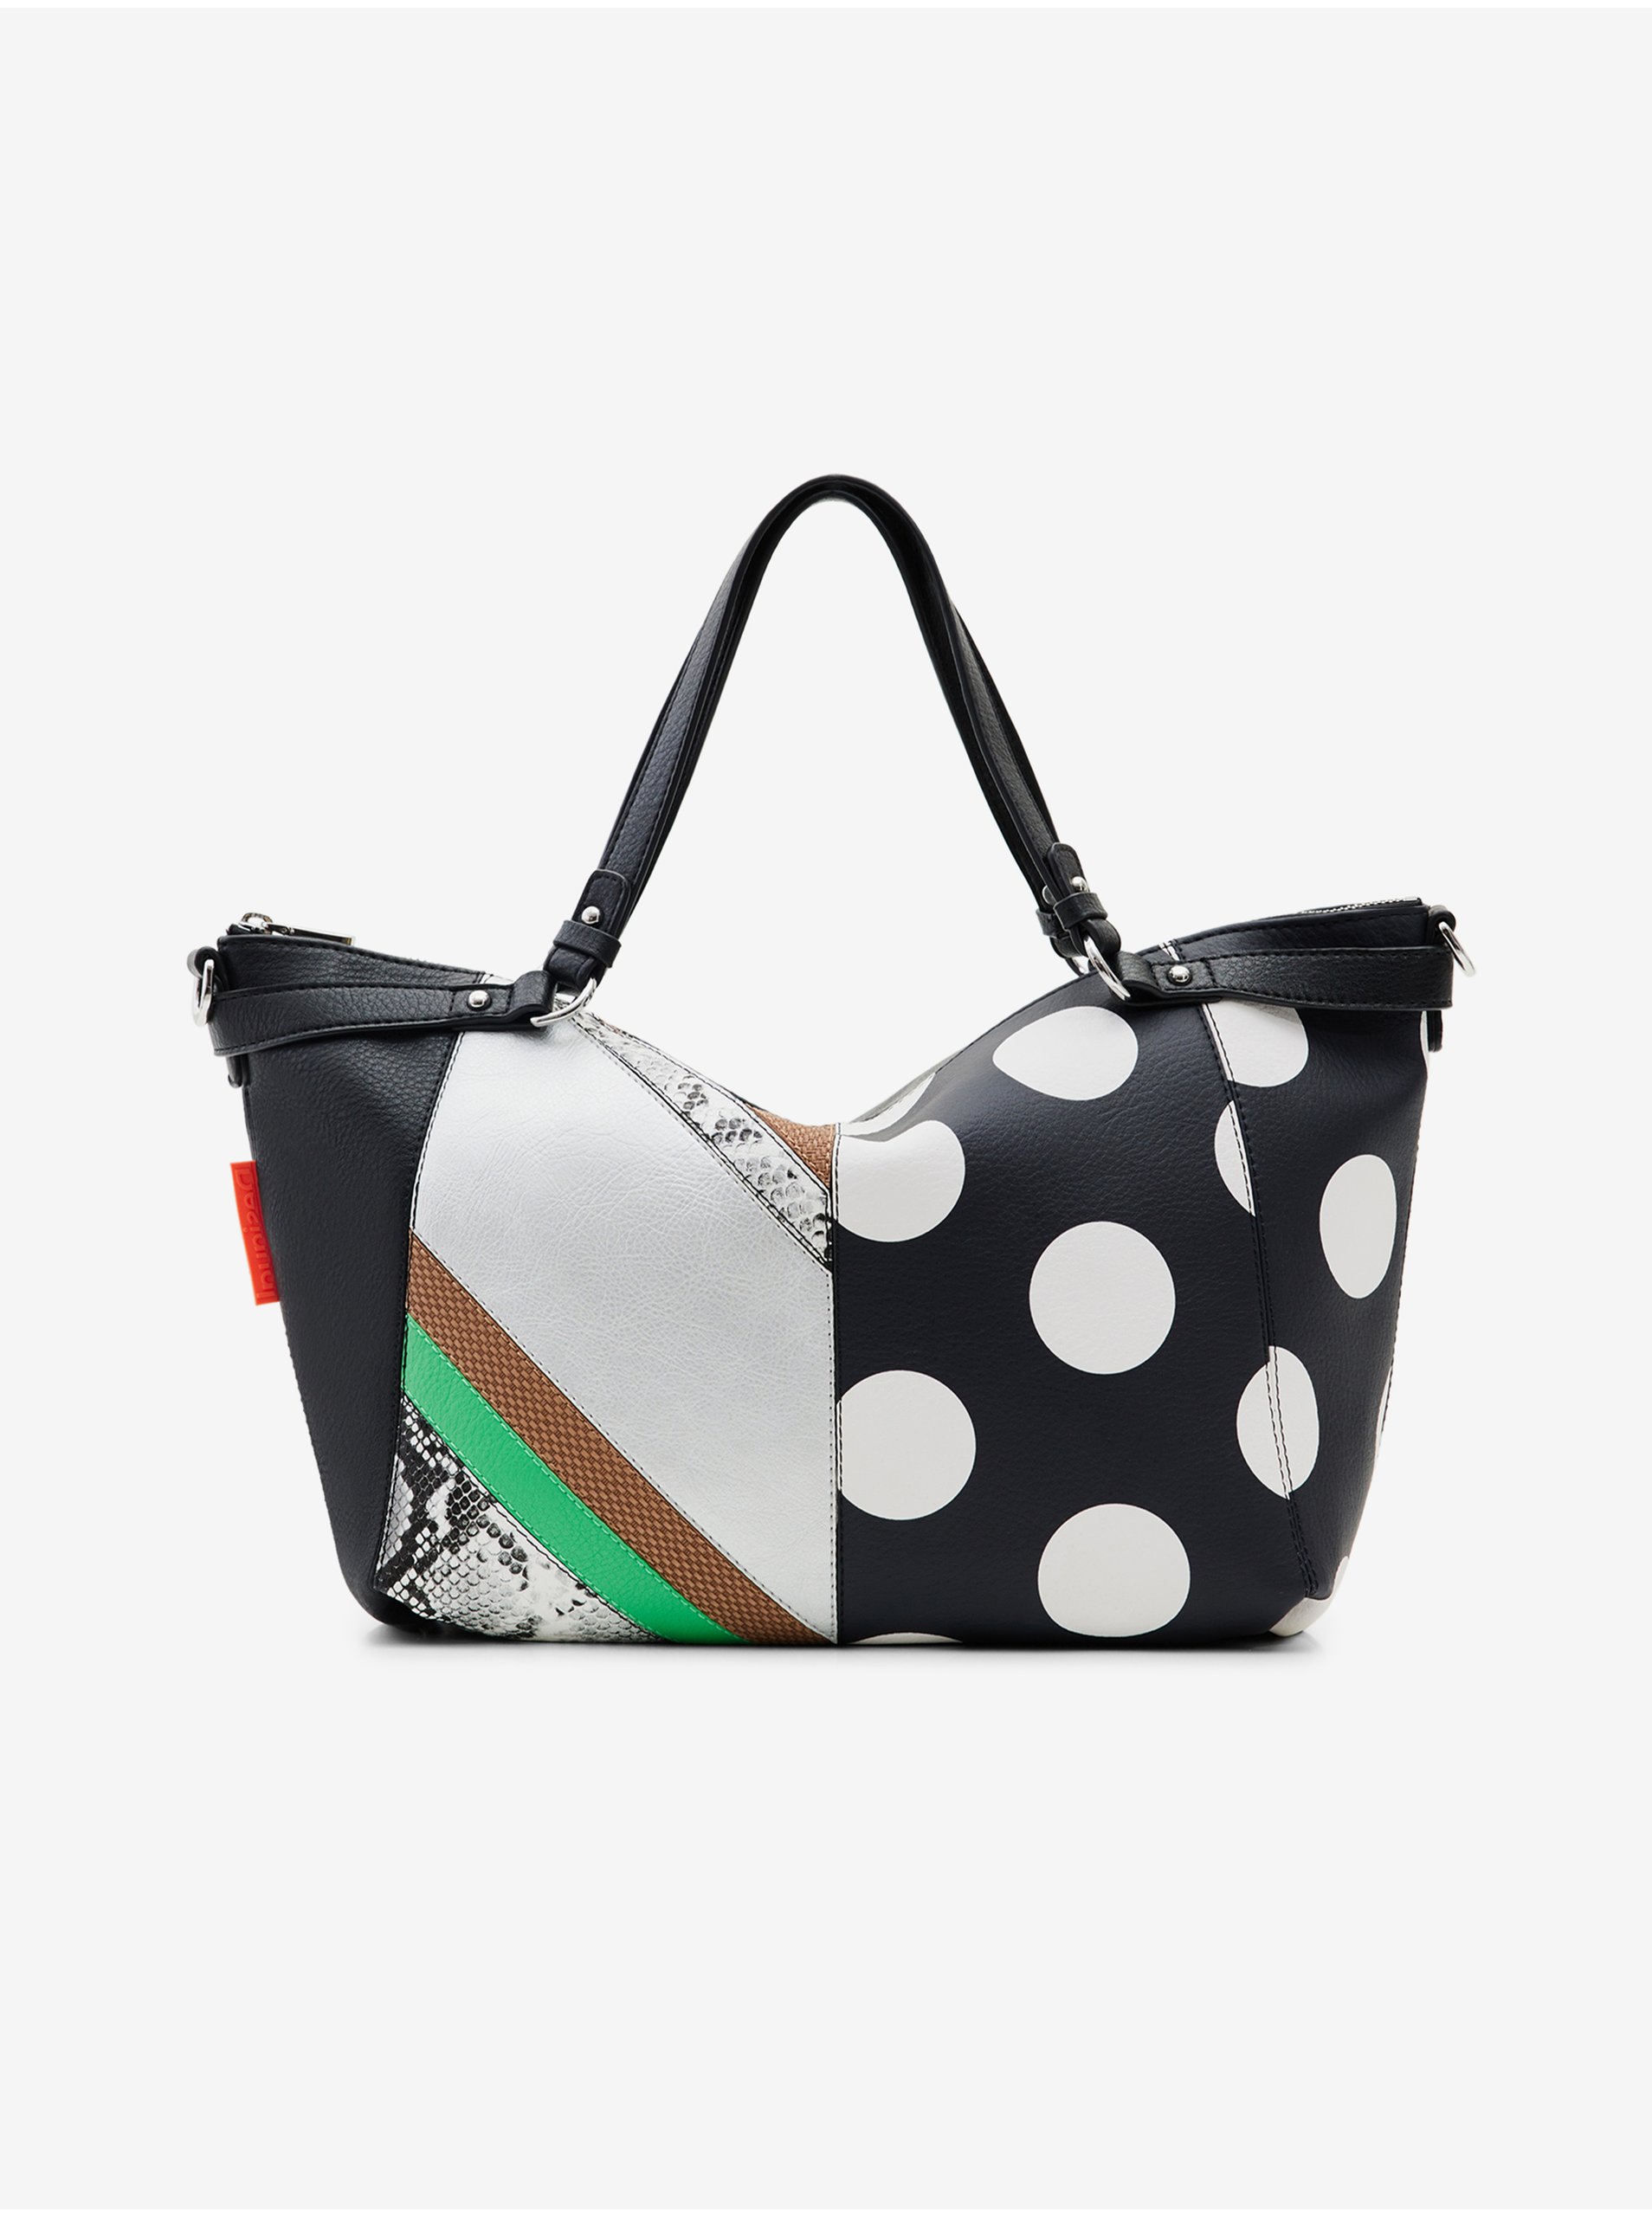 E-shop Bielo-čierna dámska vzorovaná kabelka Desigual Tango Libia